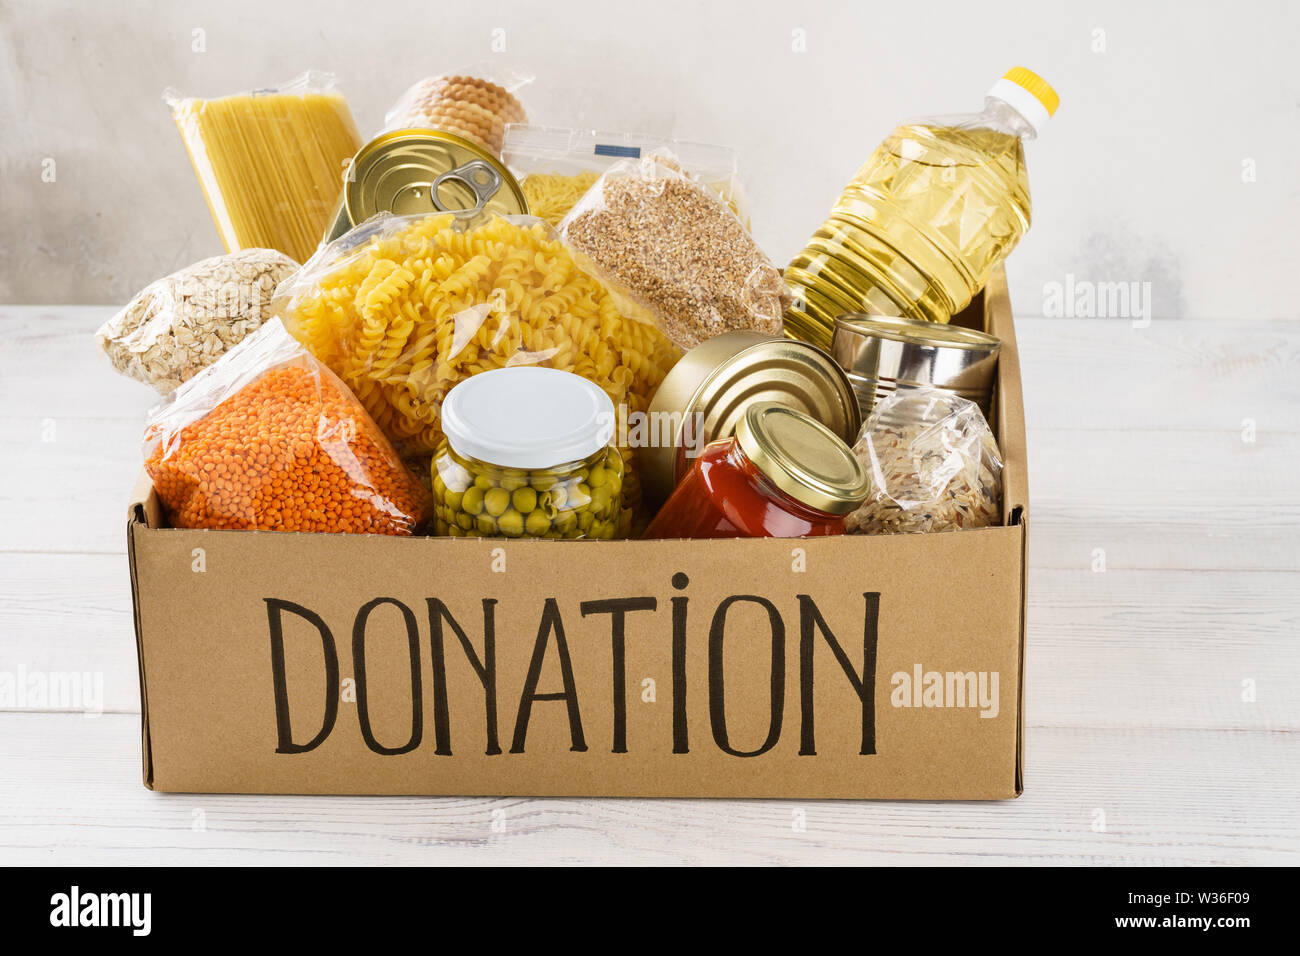 Donation box avec divers aliments. Ouvrir boîte en carton avec de l'huile, de la nourriture en conserve, céréales et pâtes alimentaires. Banque D'Images